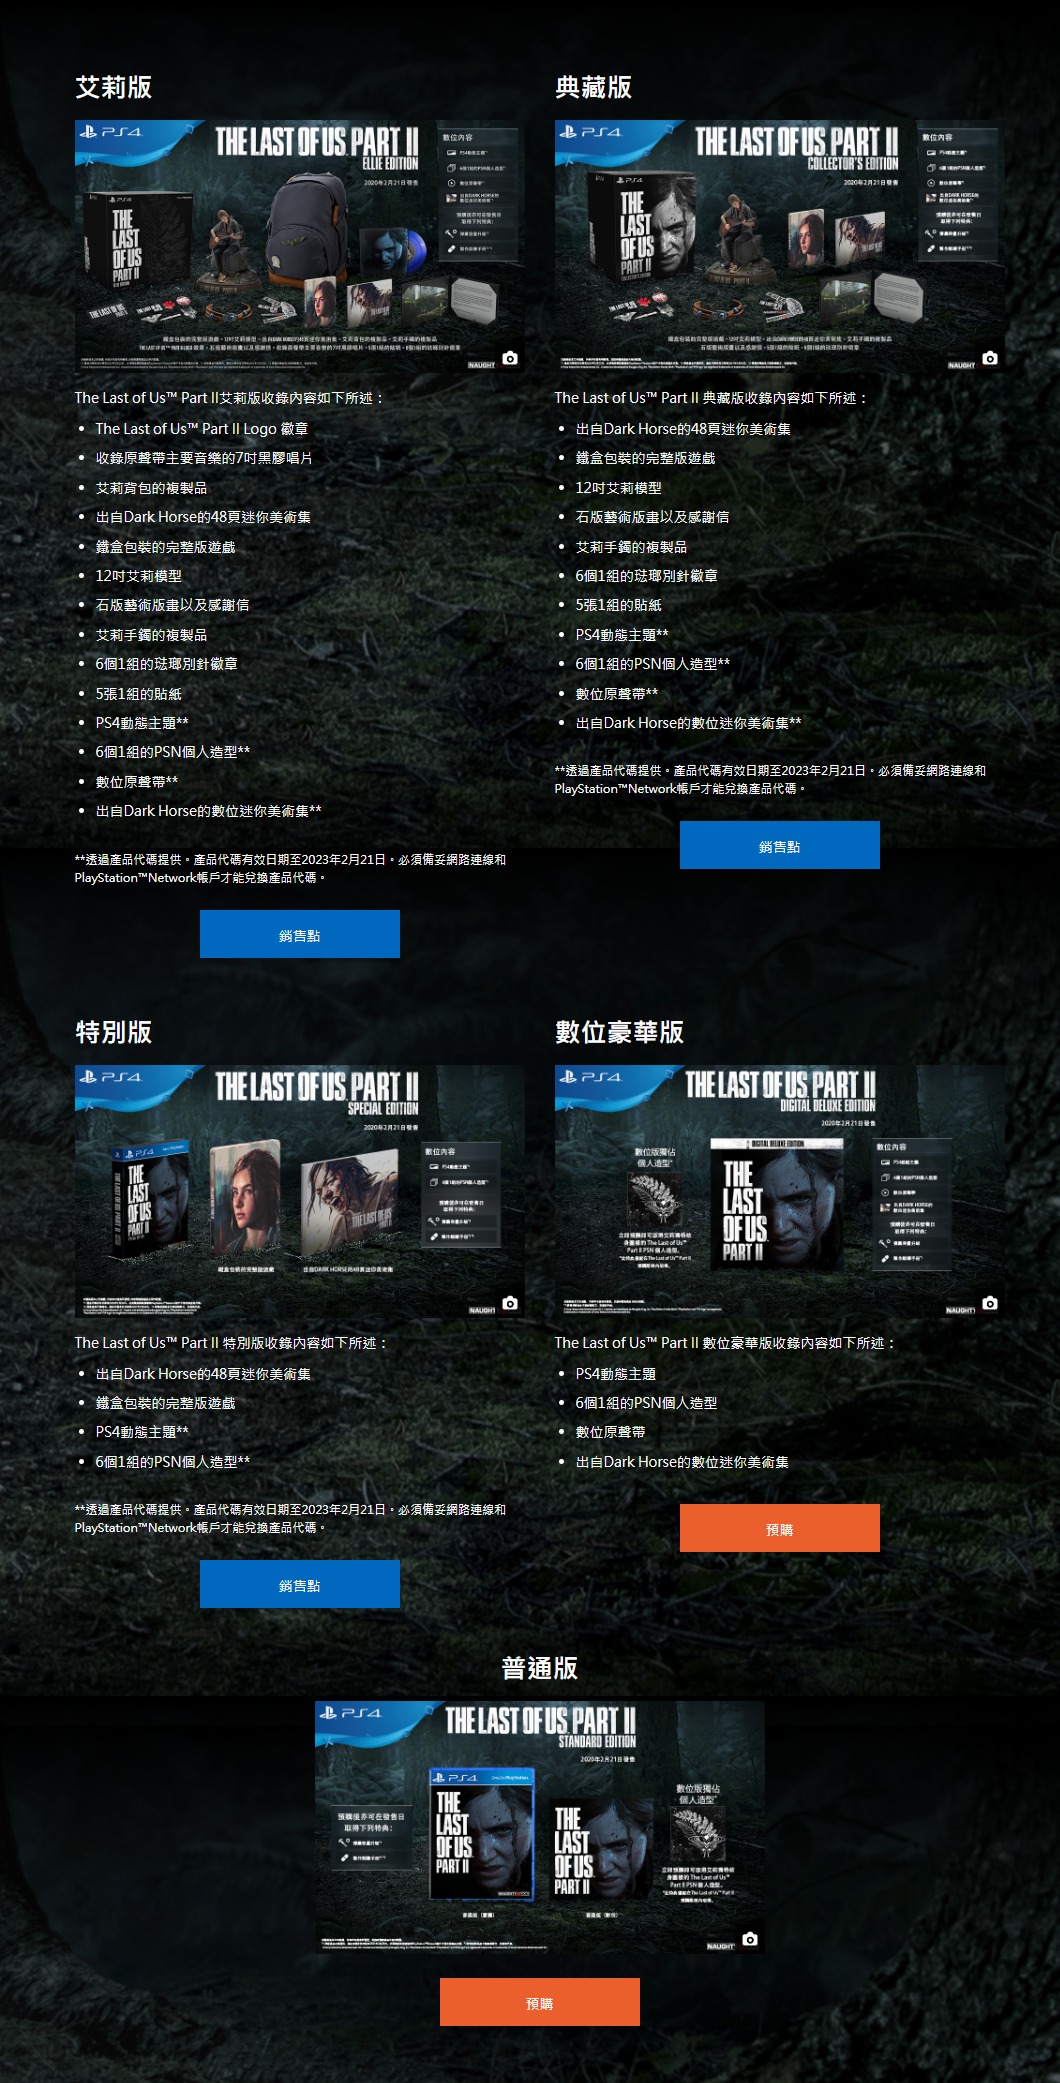 《最后生还者2》中文专题网站上线 欣赏31张高清截图